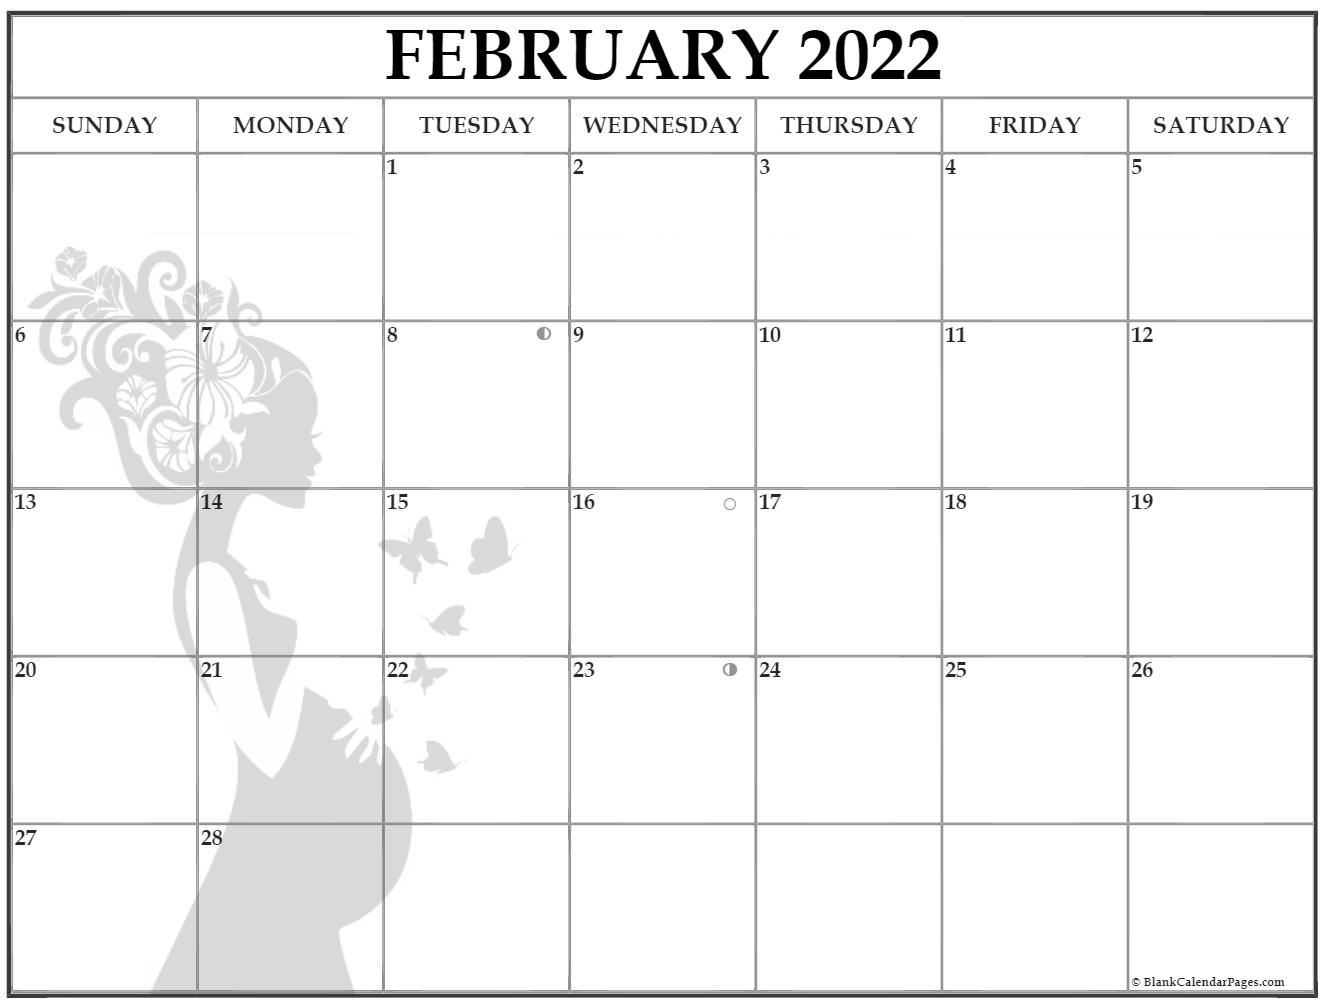 get-february-2022-calendar-events-best-calendar-example